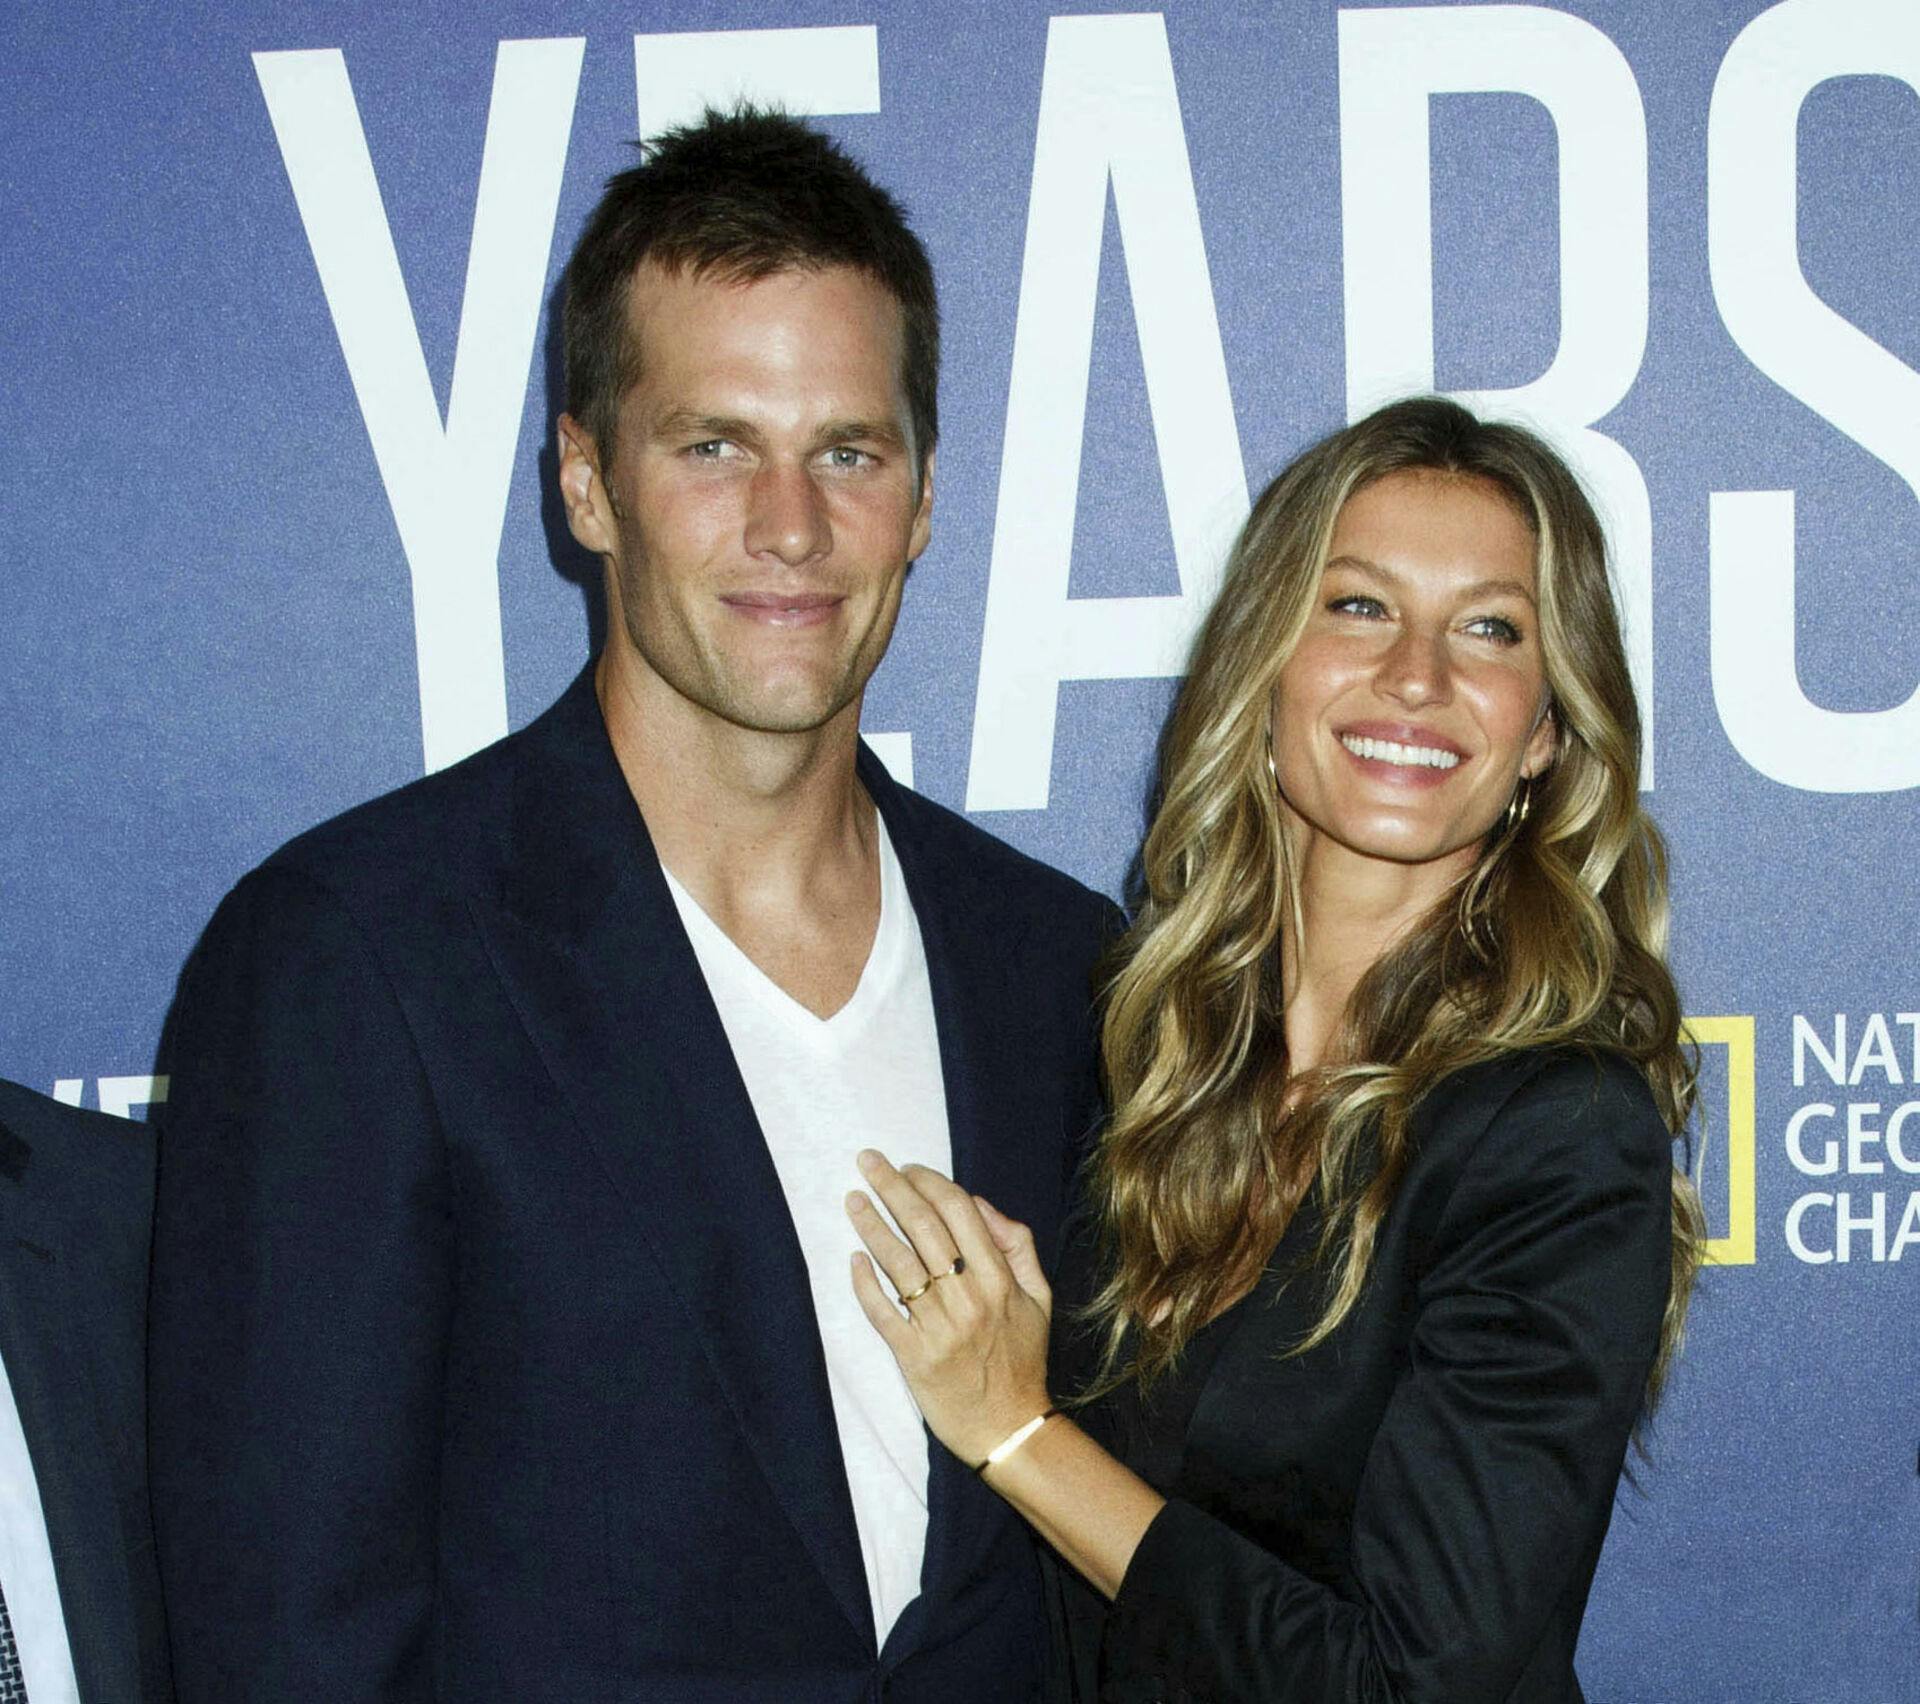 Tom Brady og Gisele Bündchen blev skilt sidste år. Gisele Bündchen skulle blandt andet være træt af at Tom Brady brugte for meget tid på at spille football i stedet for at være sammen med familien.